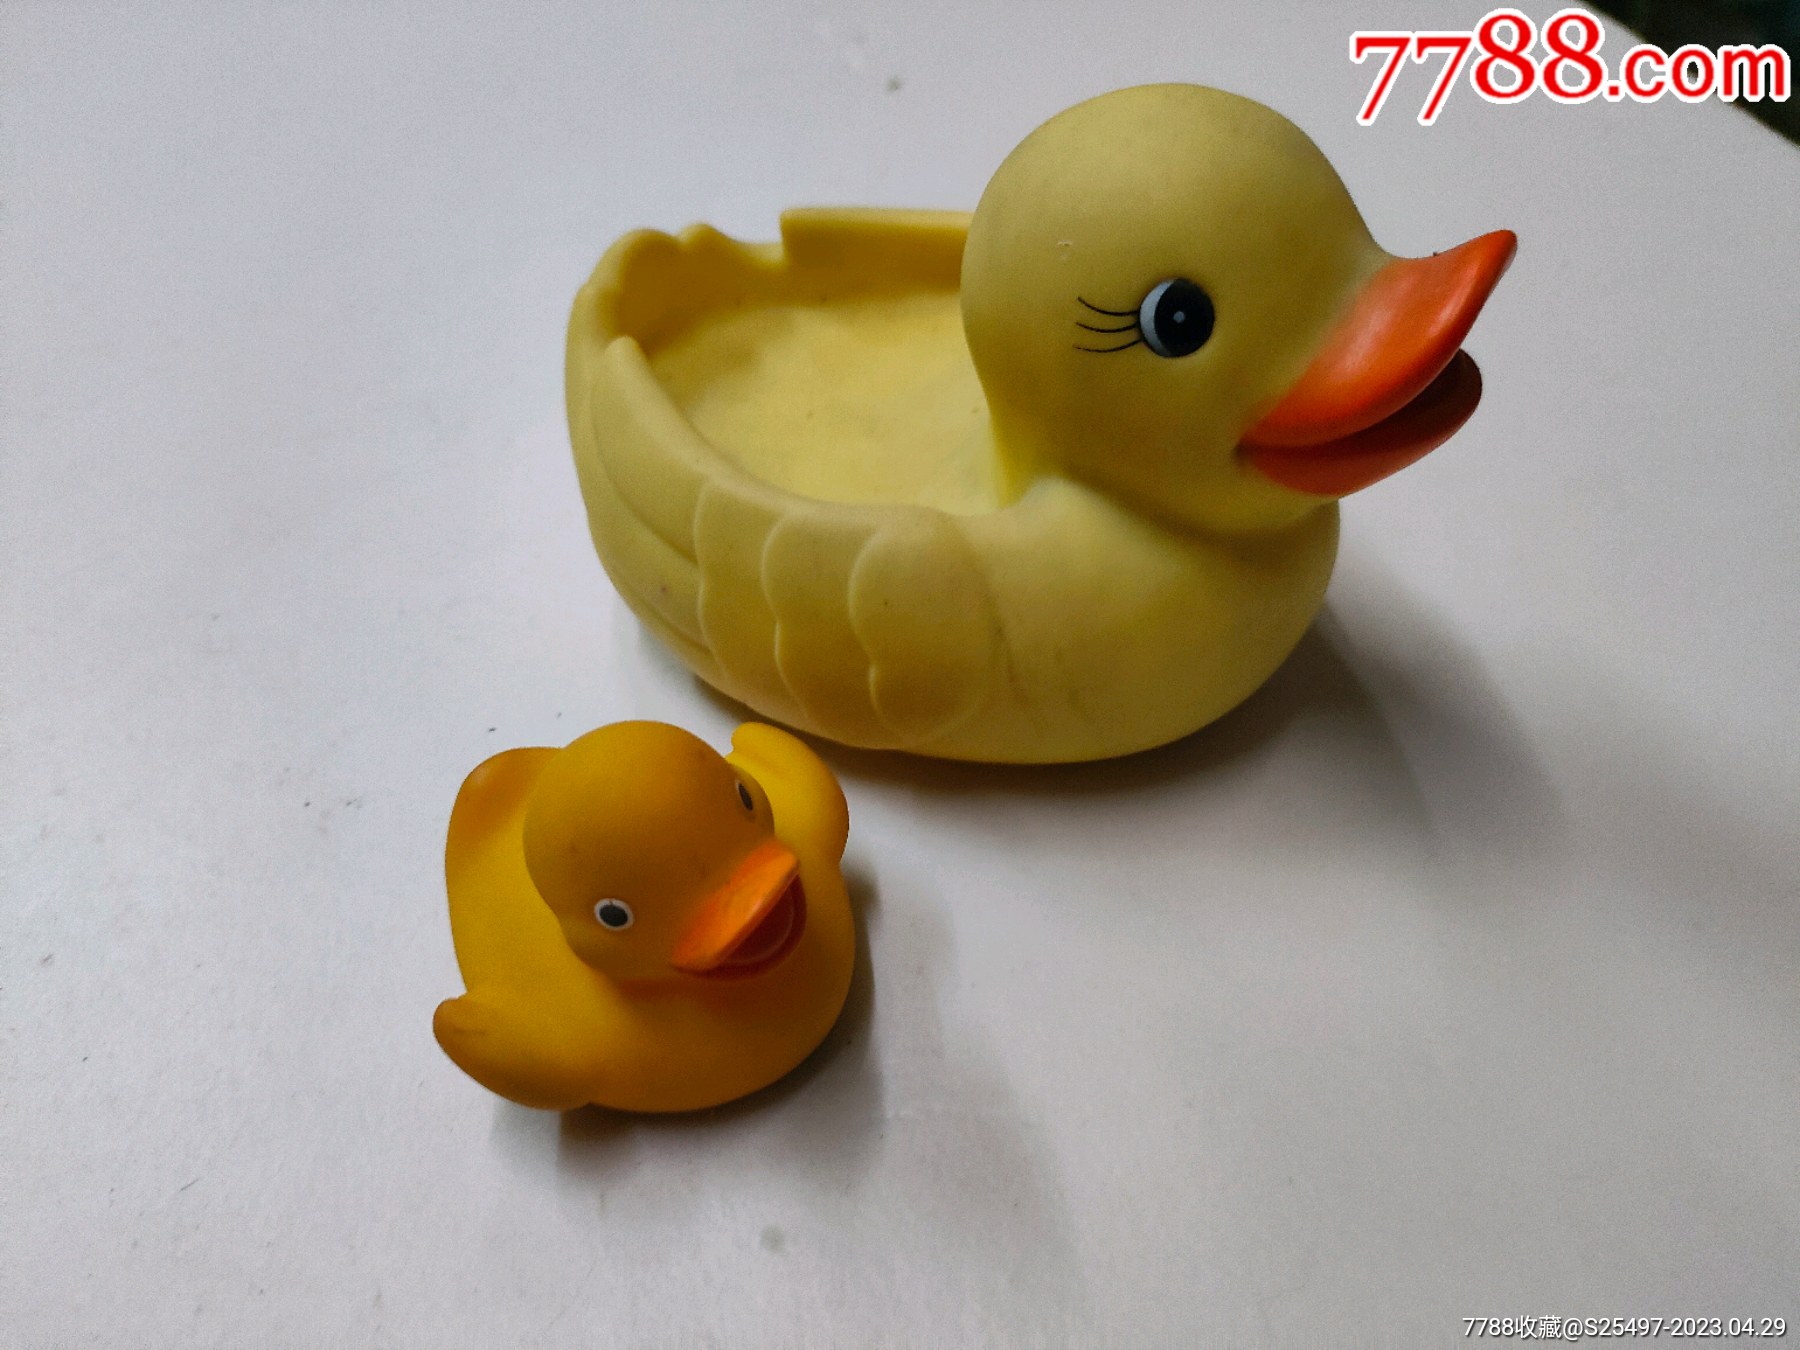 儿童益智玩具_小黄鸭洗澡 婴儿戏水彩色小鸭子儿童益智玩具批发 - 阿里巴巴